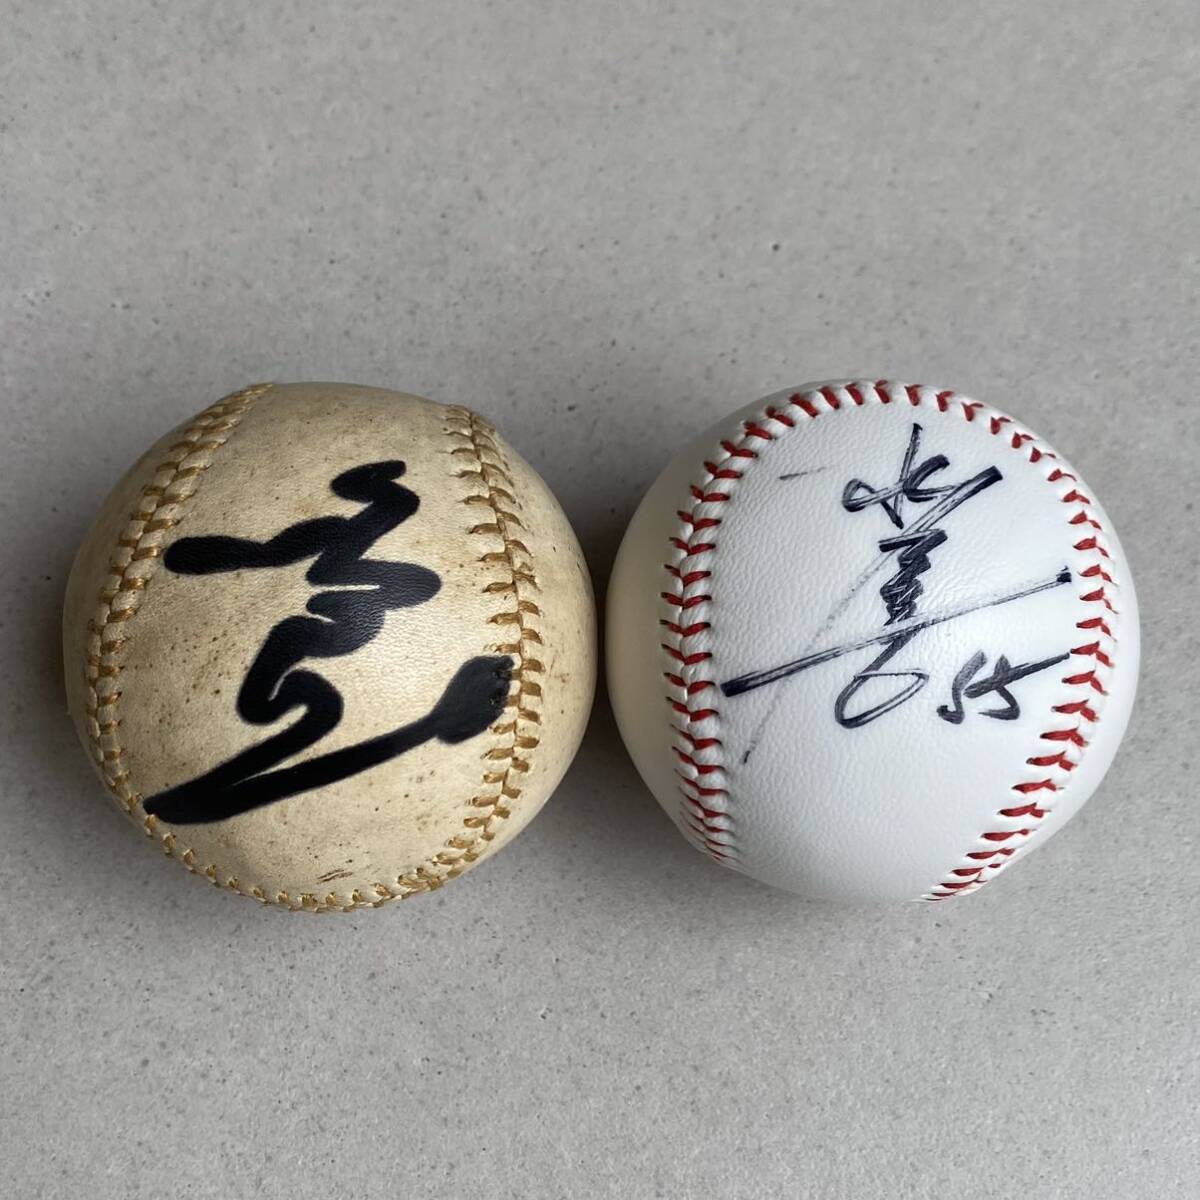  золотой рисовое поле правильный один сосна . превосходящий . автограф мяч автограф Yomiuri Giants . человек Professional Baseball игрок бейсбол 